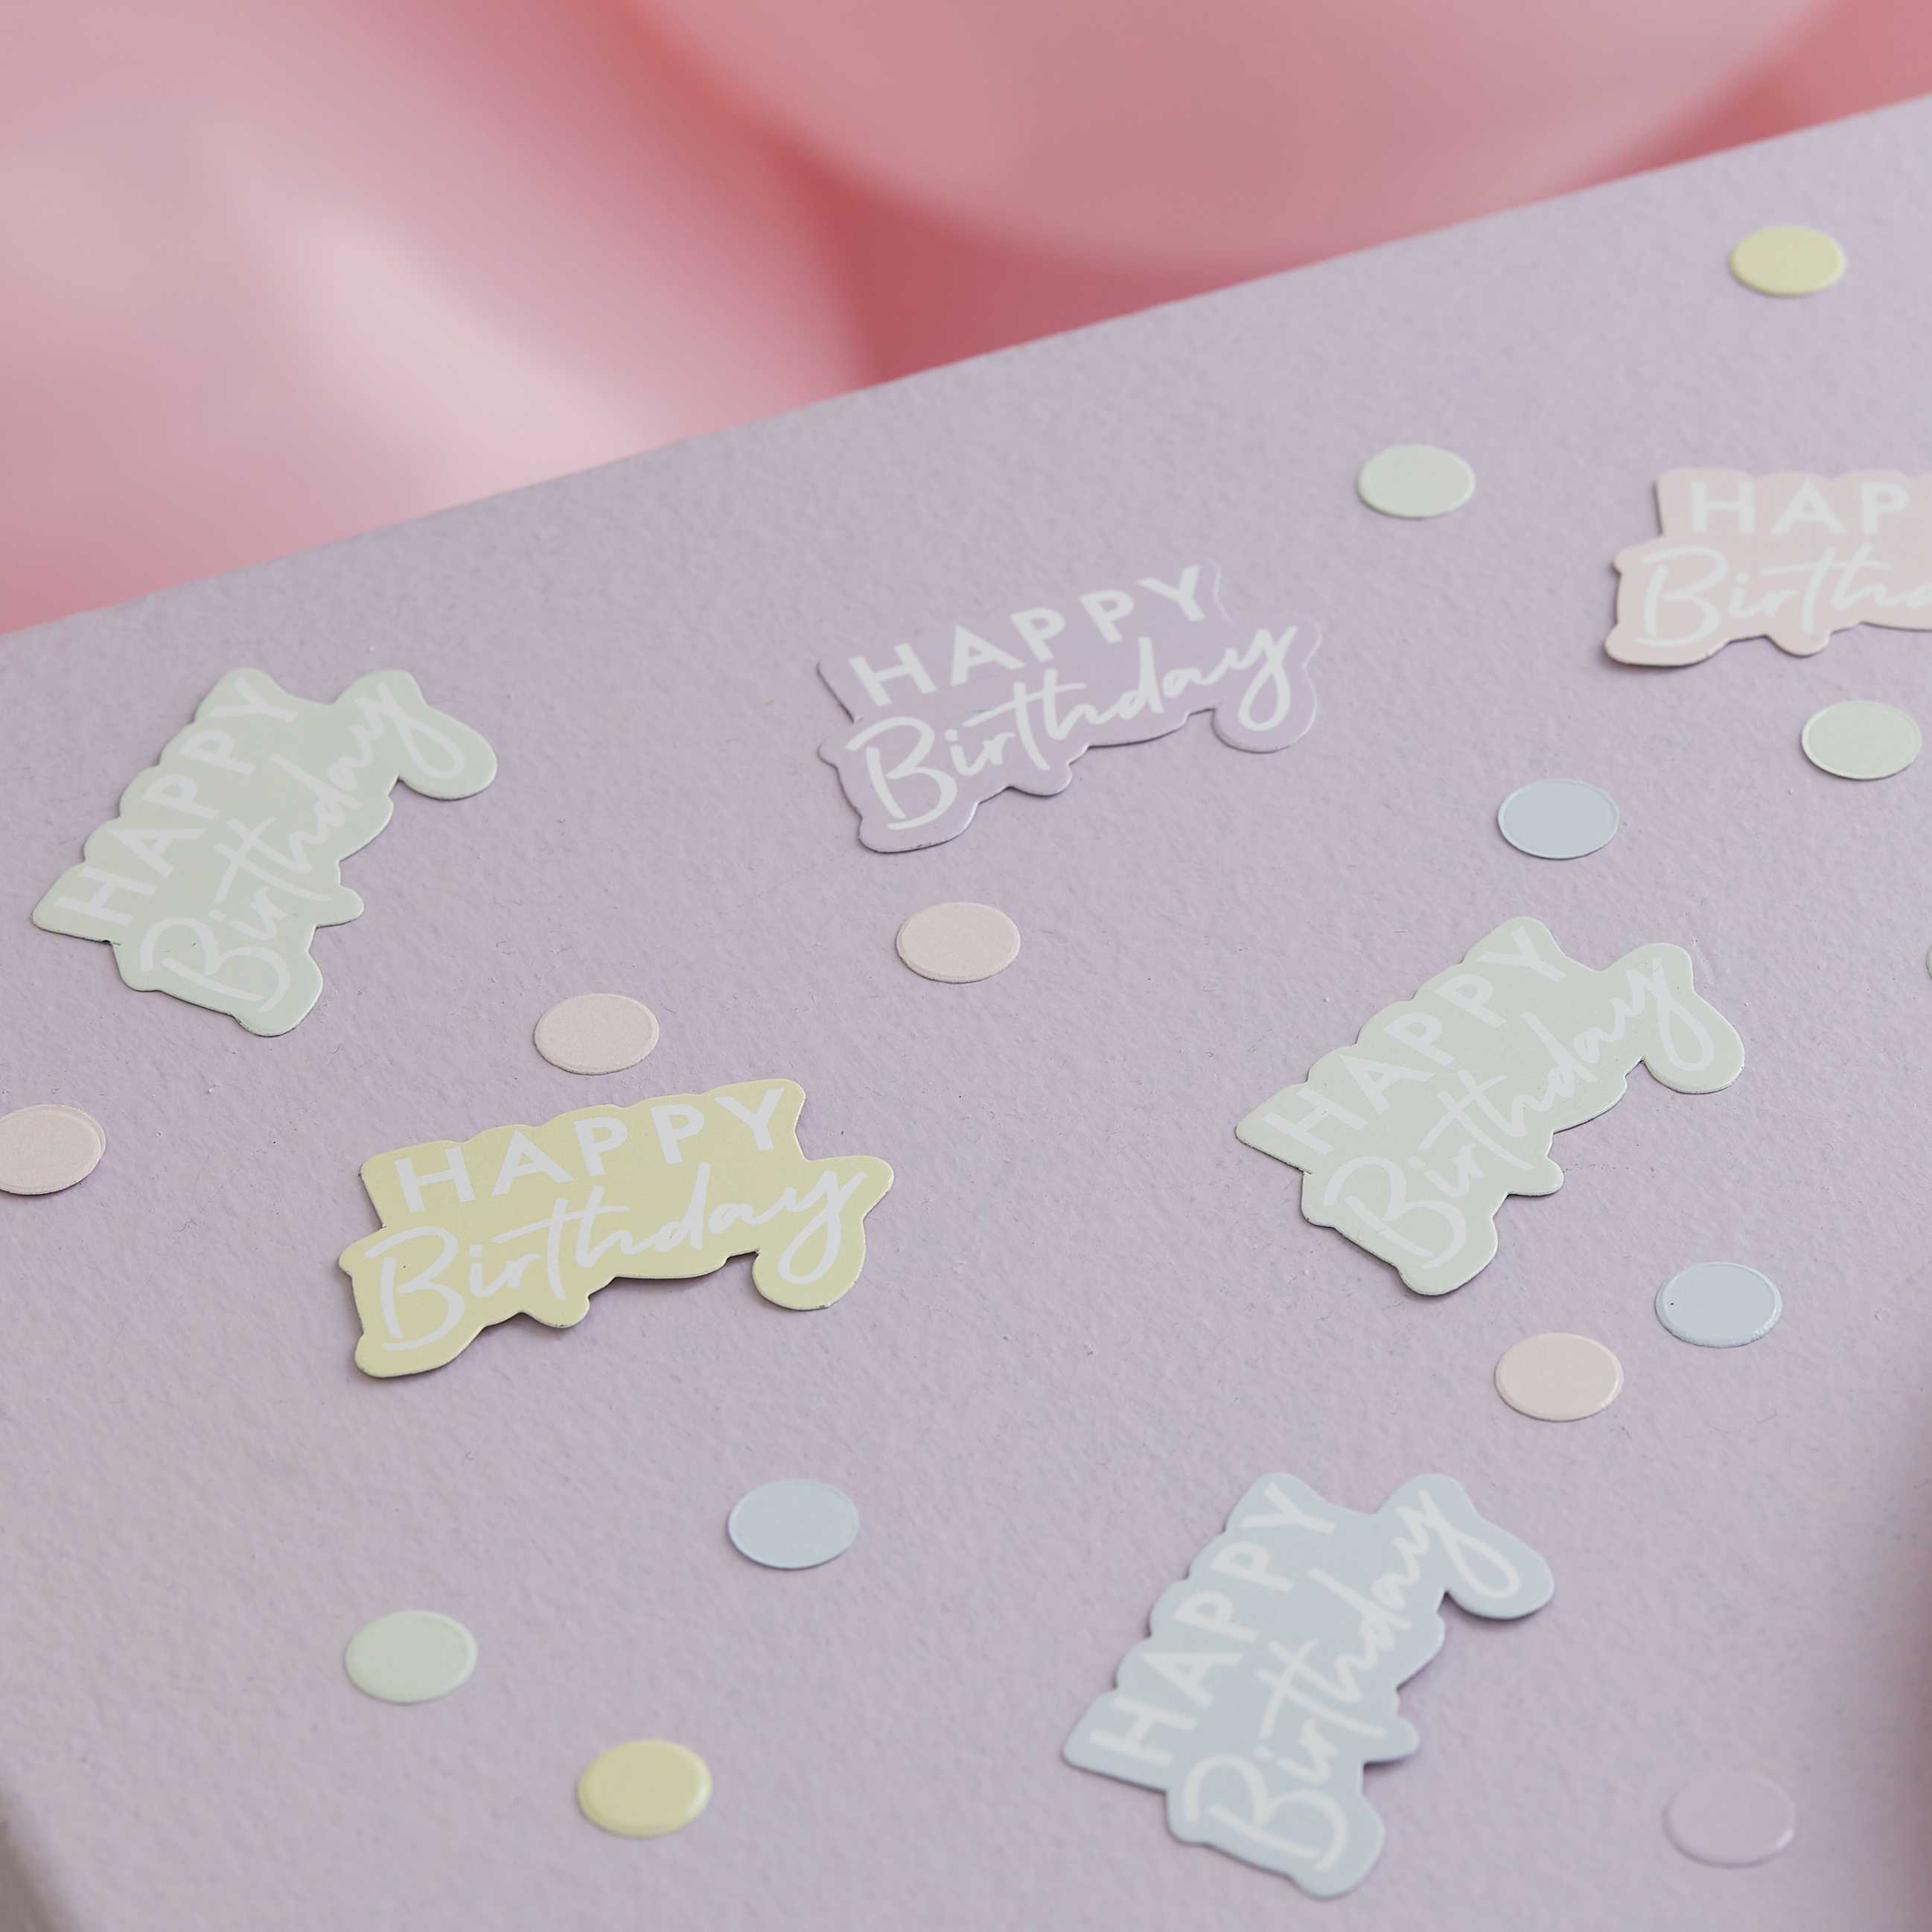 Happy Birthday Pastel konfetti